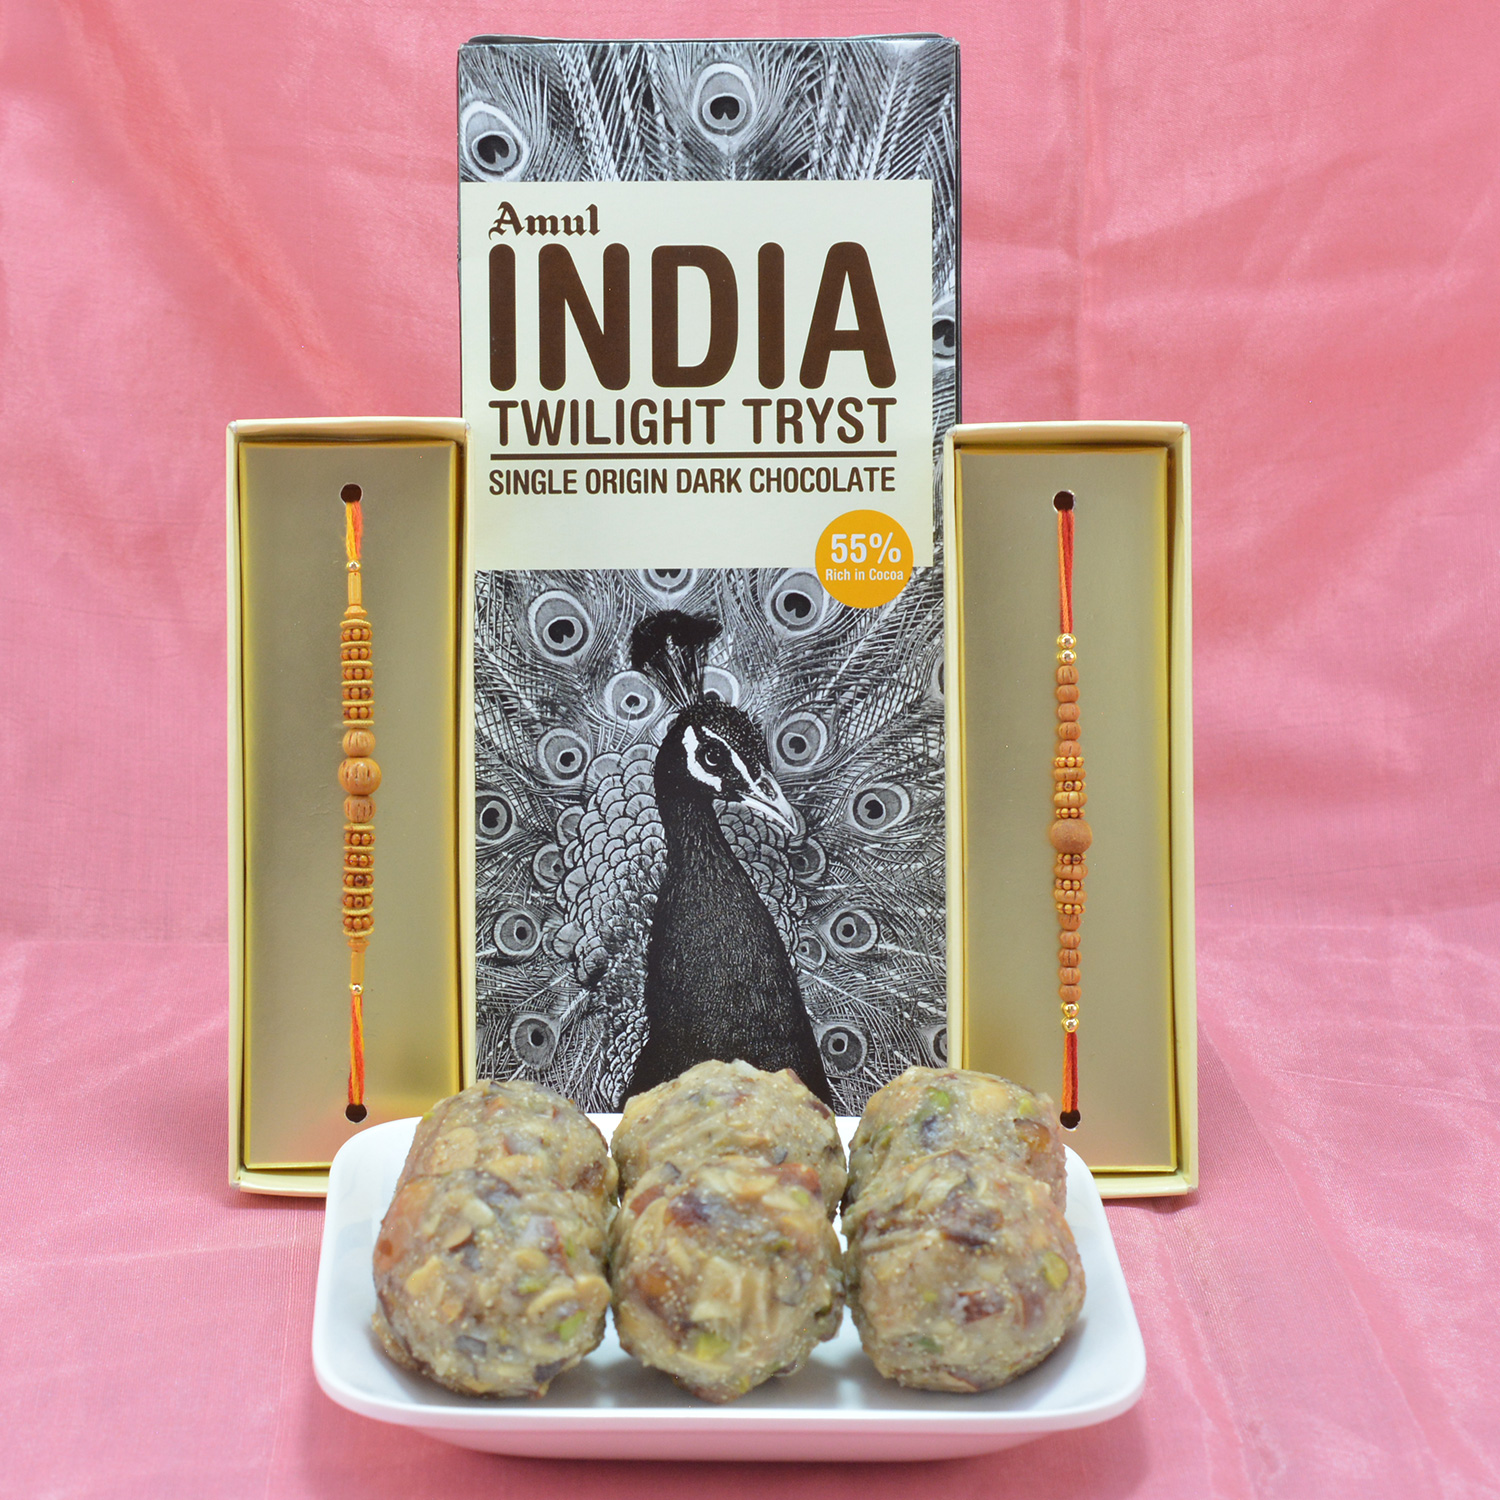 Wonderful Sandalwood Beads Rakhi with Delicious Amul India Chocolate along with luscious Mix Dry Fruit Laddu